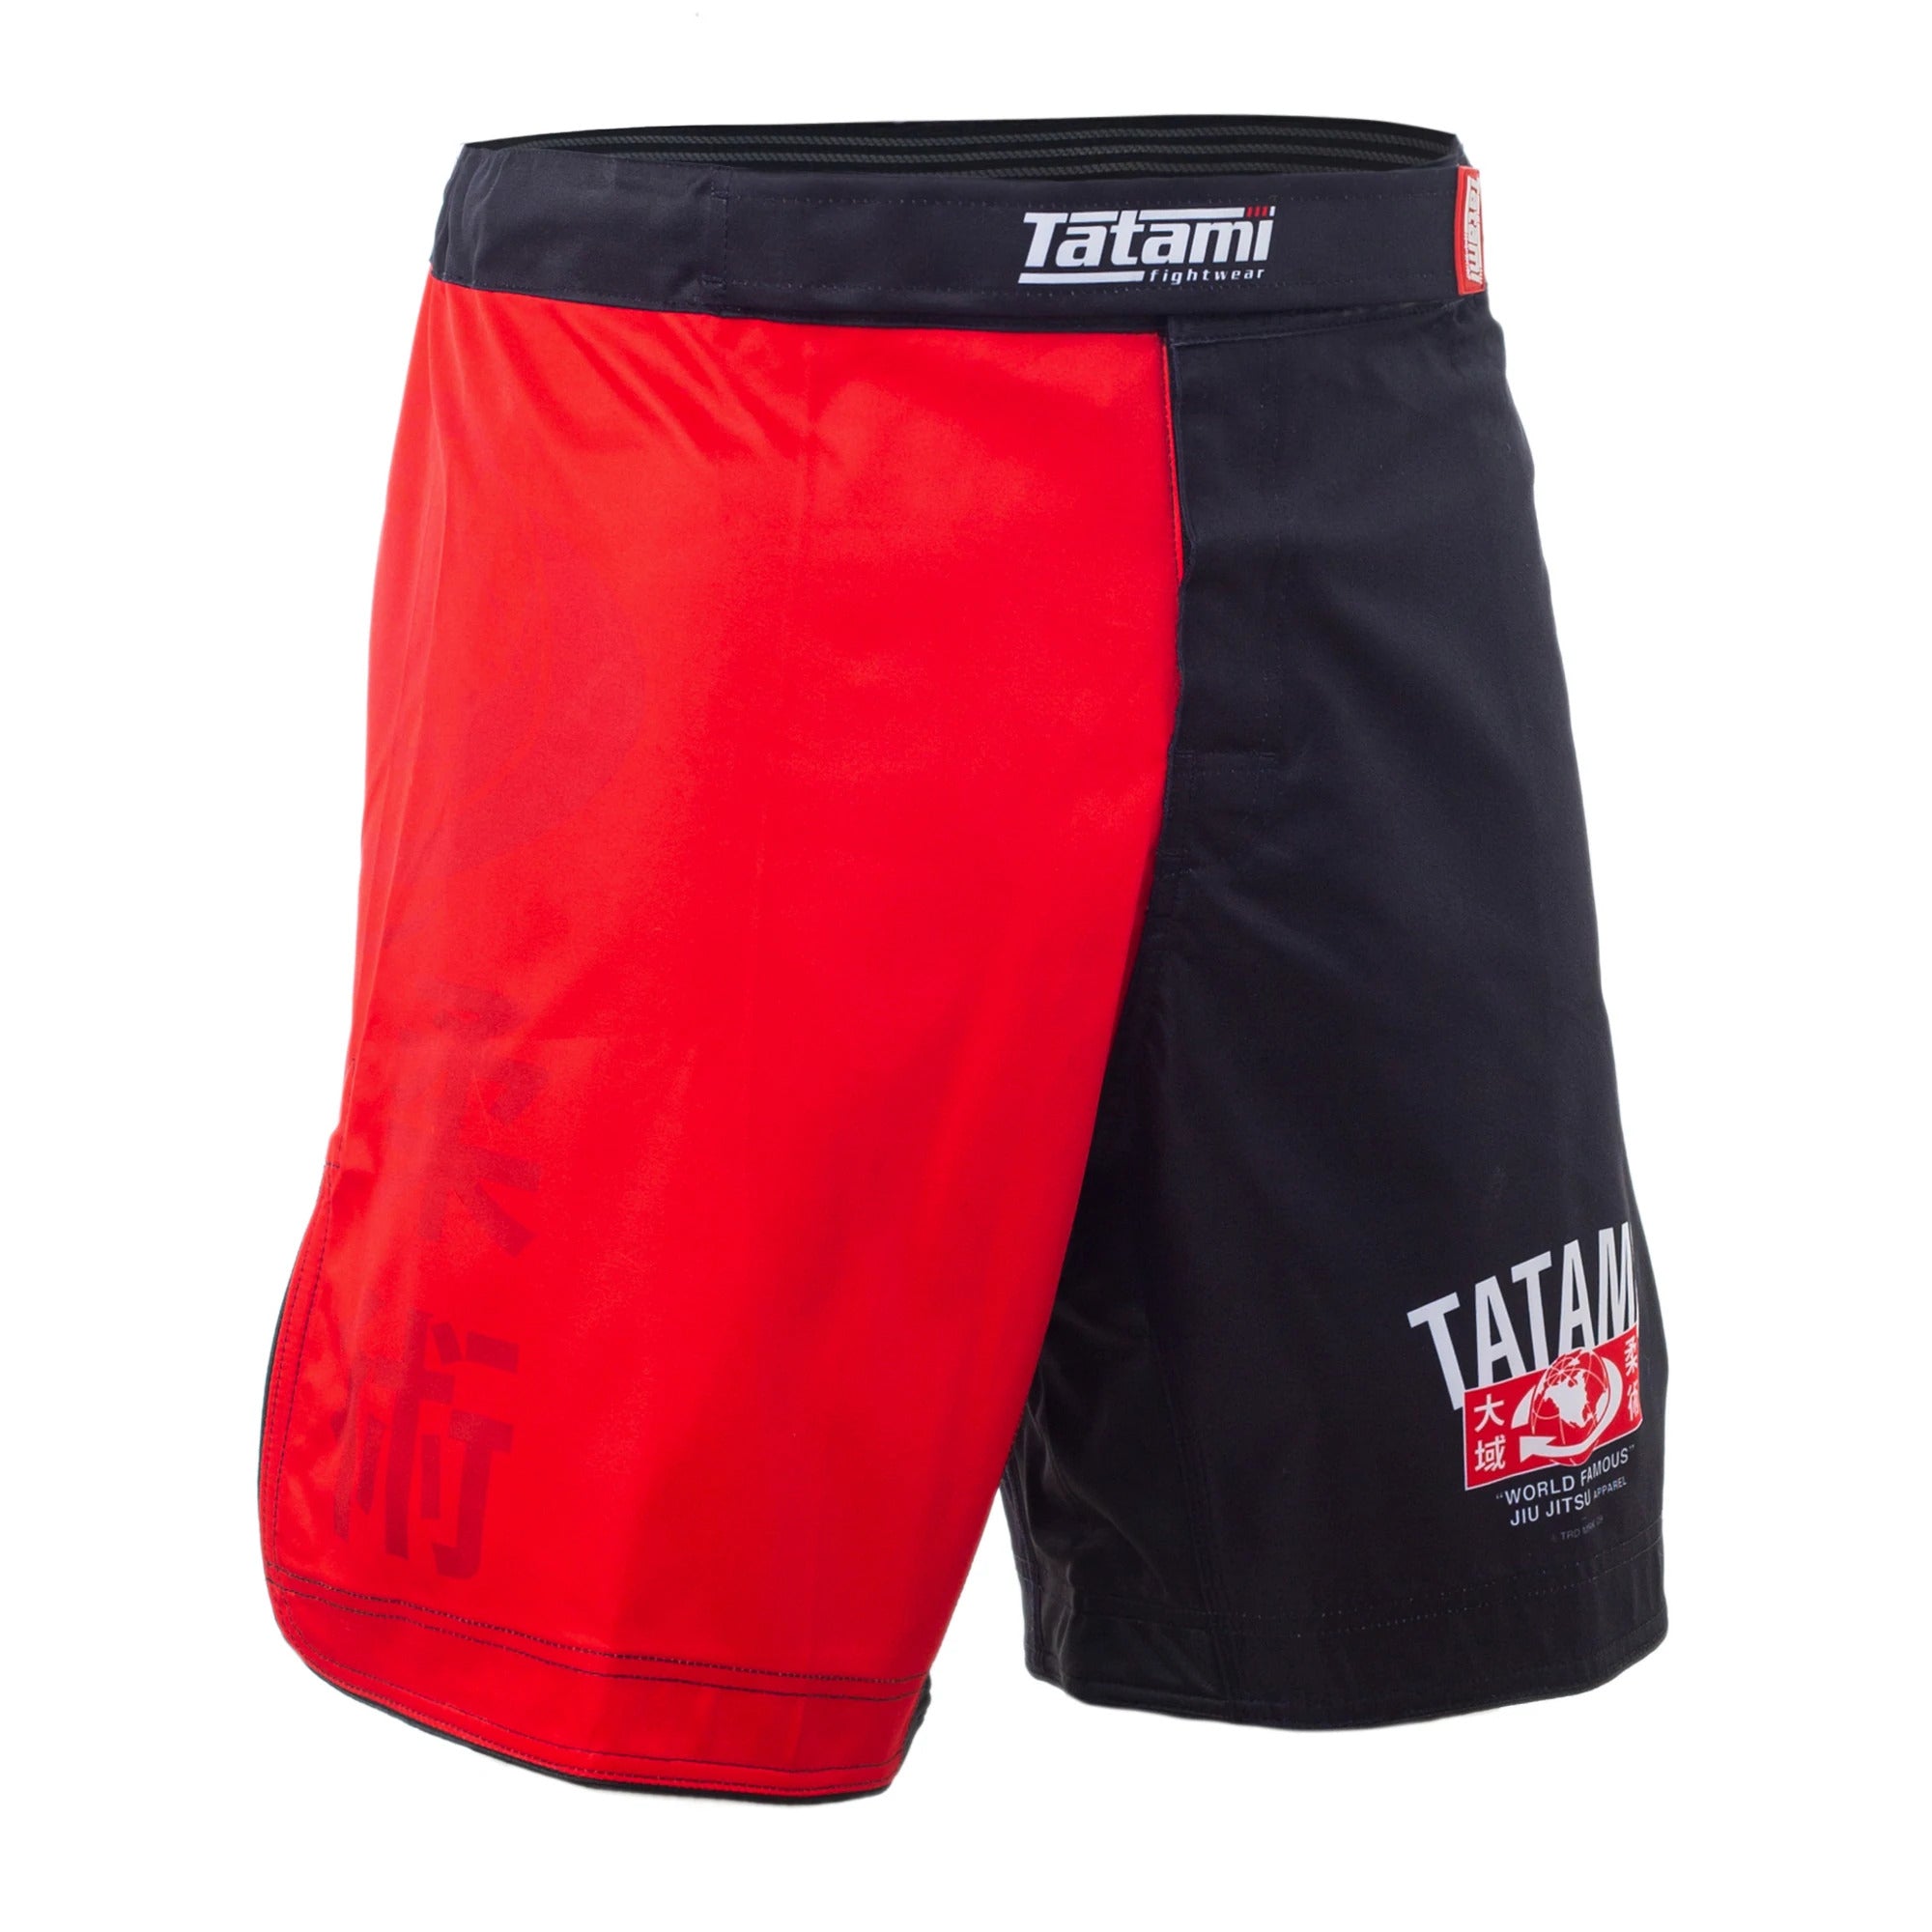 Tatami World Famous Grappling Shorts Tatami